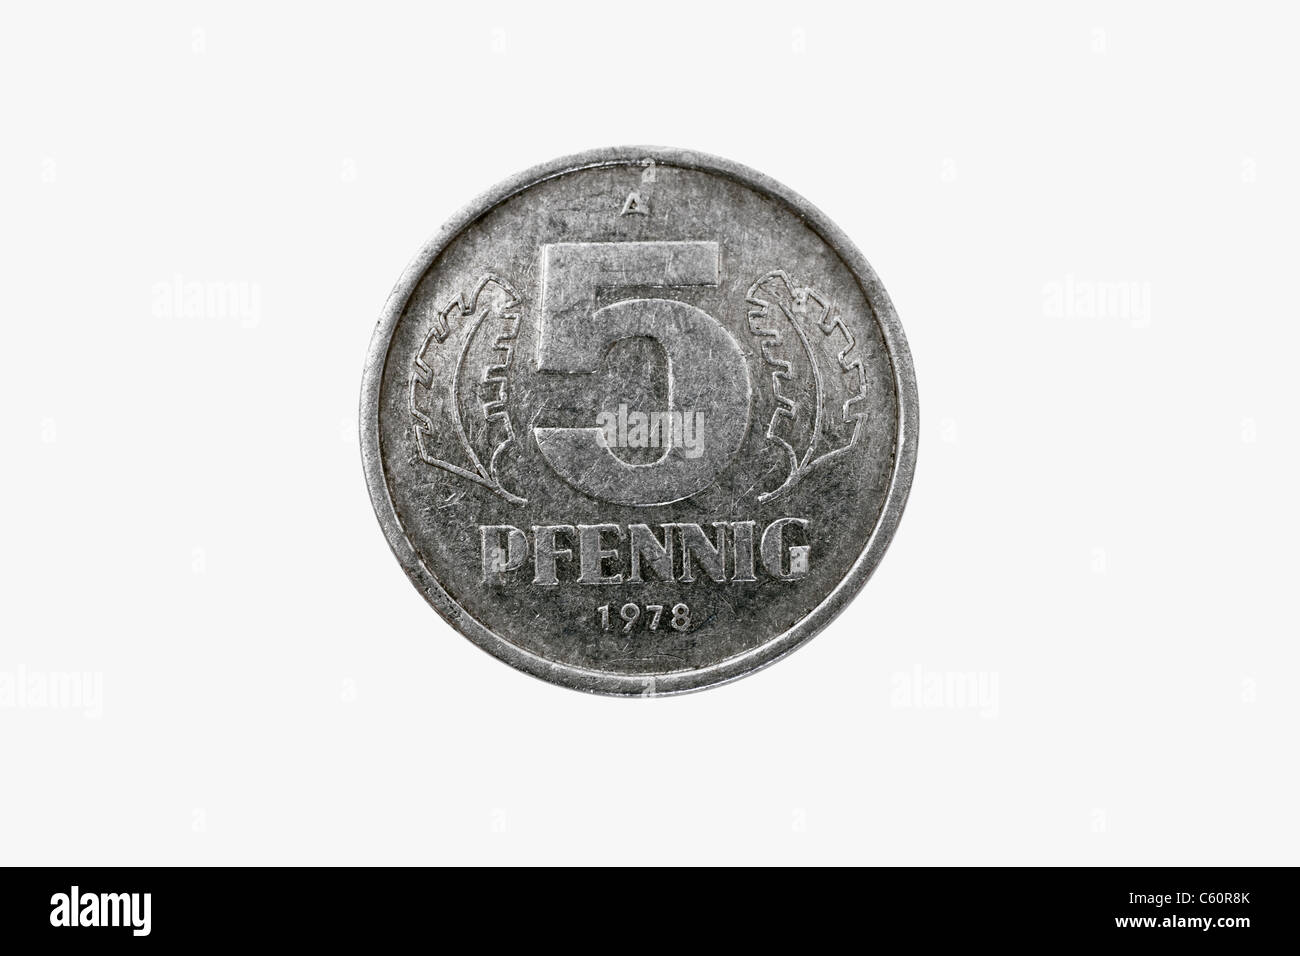 Detailansicht einer 5 Pfennig Münze aus der DDR aus dem Jahr 1978 | Detail photo of a 5 Pfennig coin of GDR from the year 1978 Stock Photo